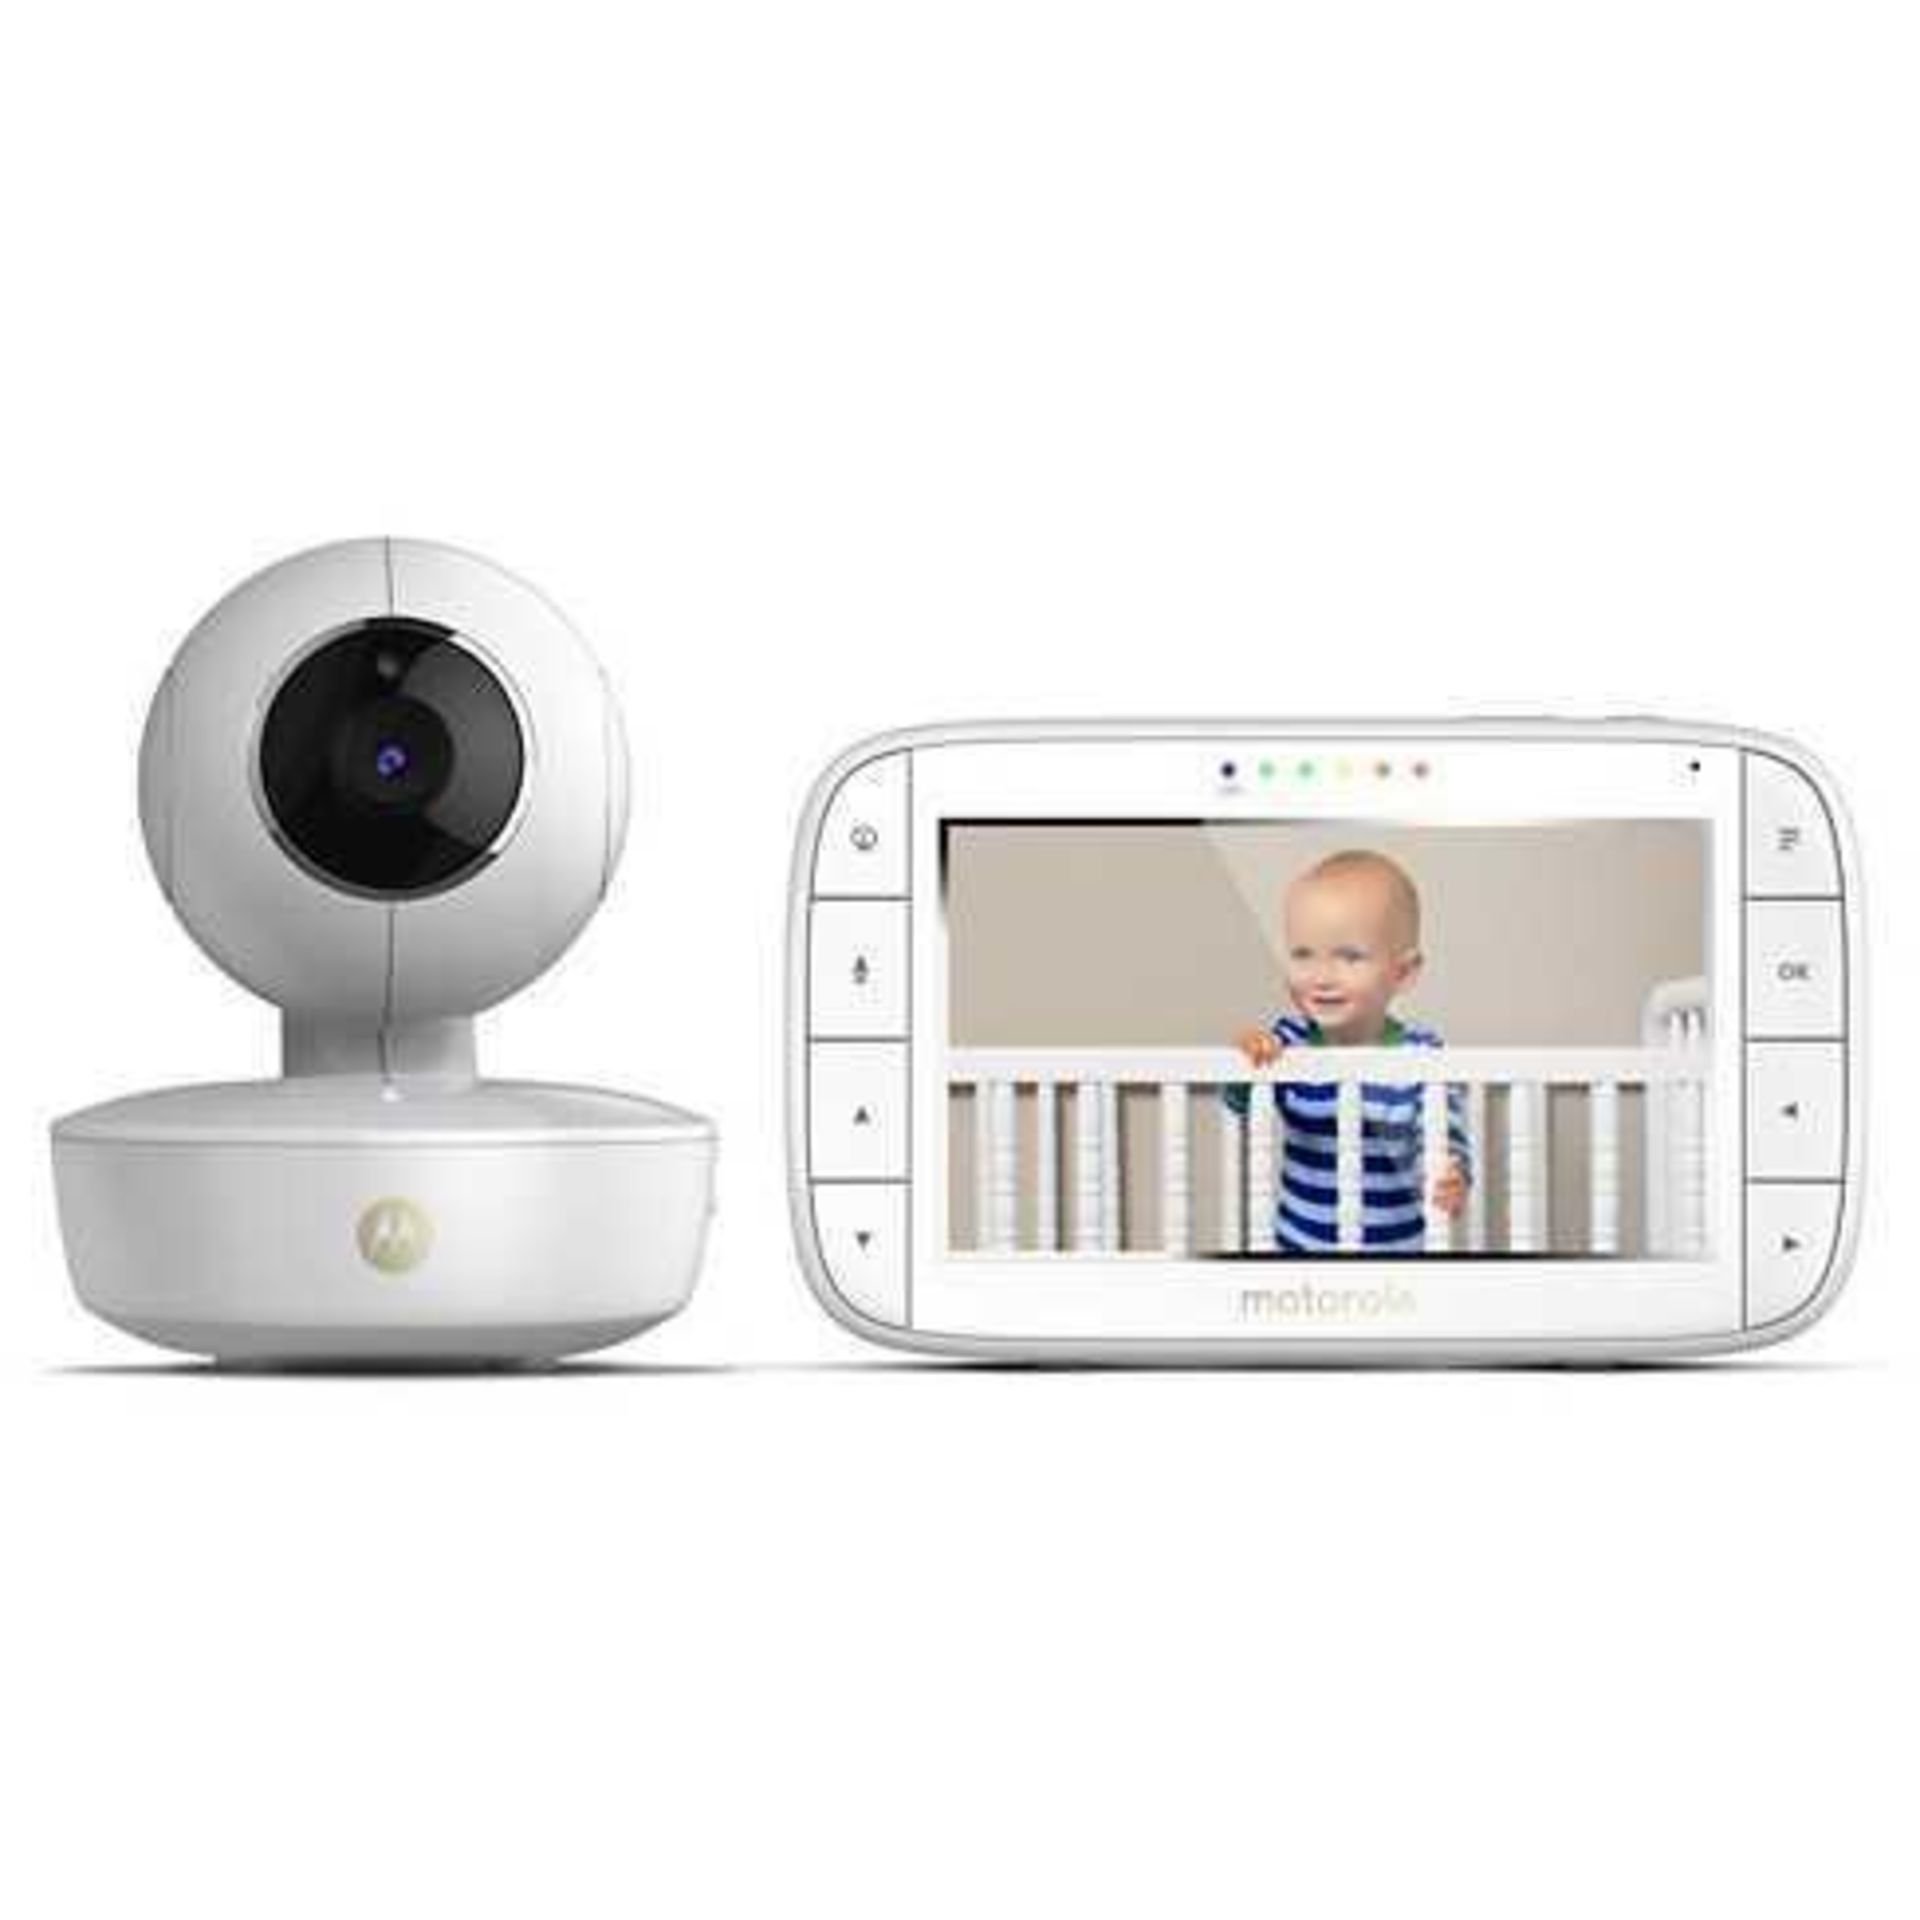 Rrp £70 Unboxed Motorola Mbp35Xlc Video Baby Monitor